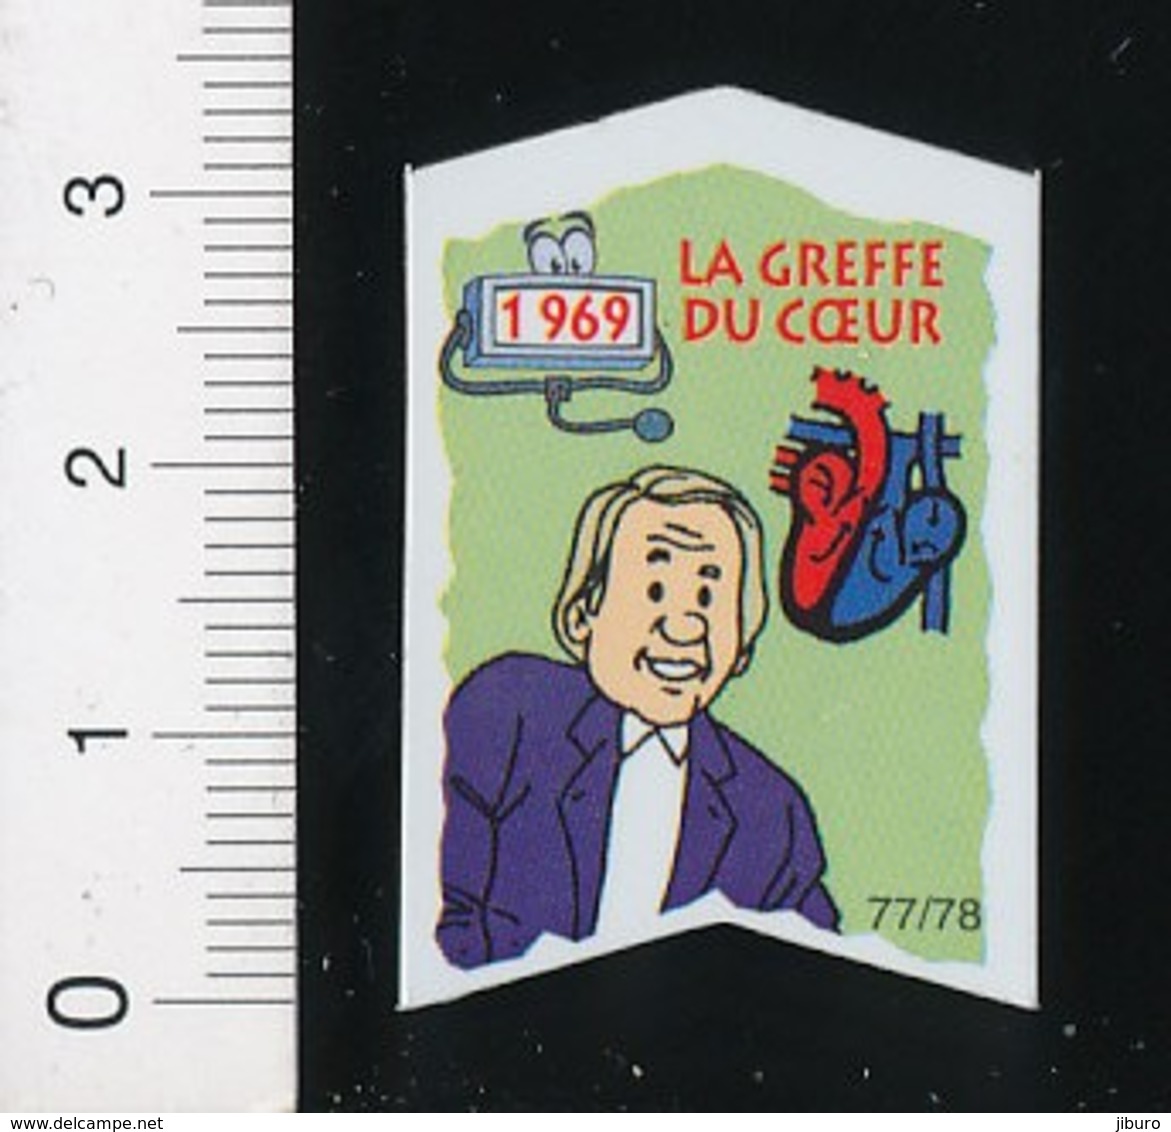 Magnet Le Gaulois 77/78 (Les Découvreurs) La Greffe Du Coeur 01-mag1 - Magnets